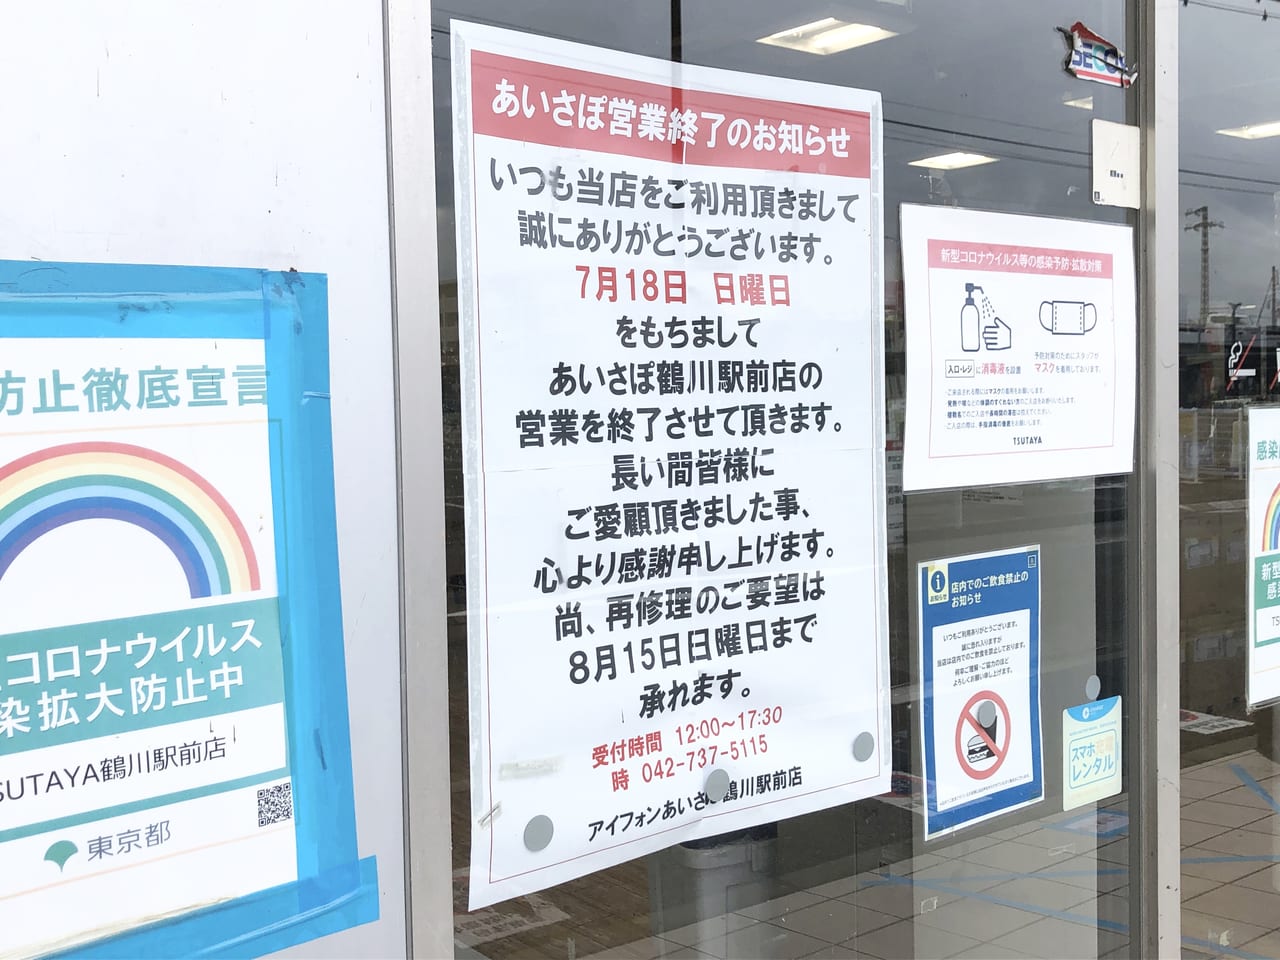 町田市 Tsutaya鶴川駅前店が8月15日で営業終了になります 店内は在庫一掃セールが行われていますよ 号外net 町田市